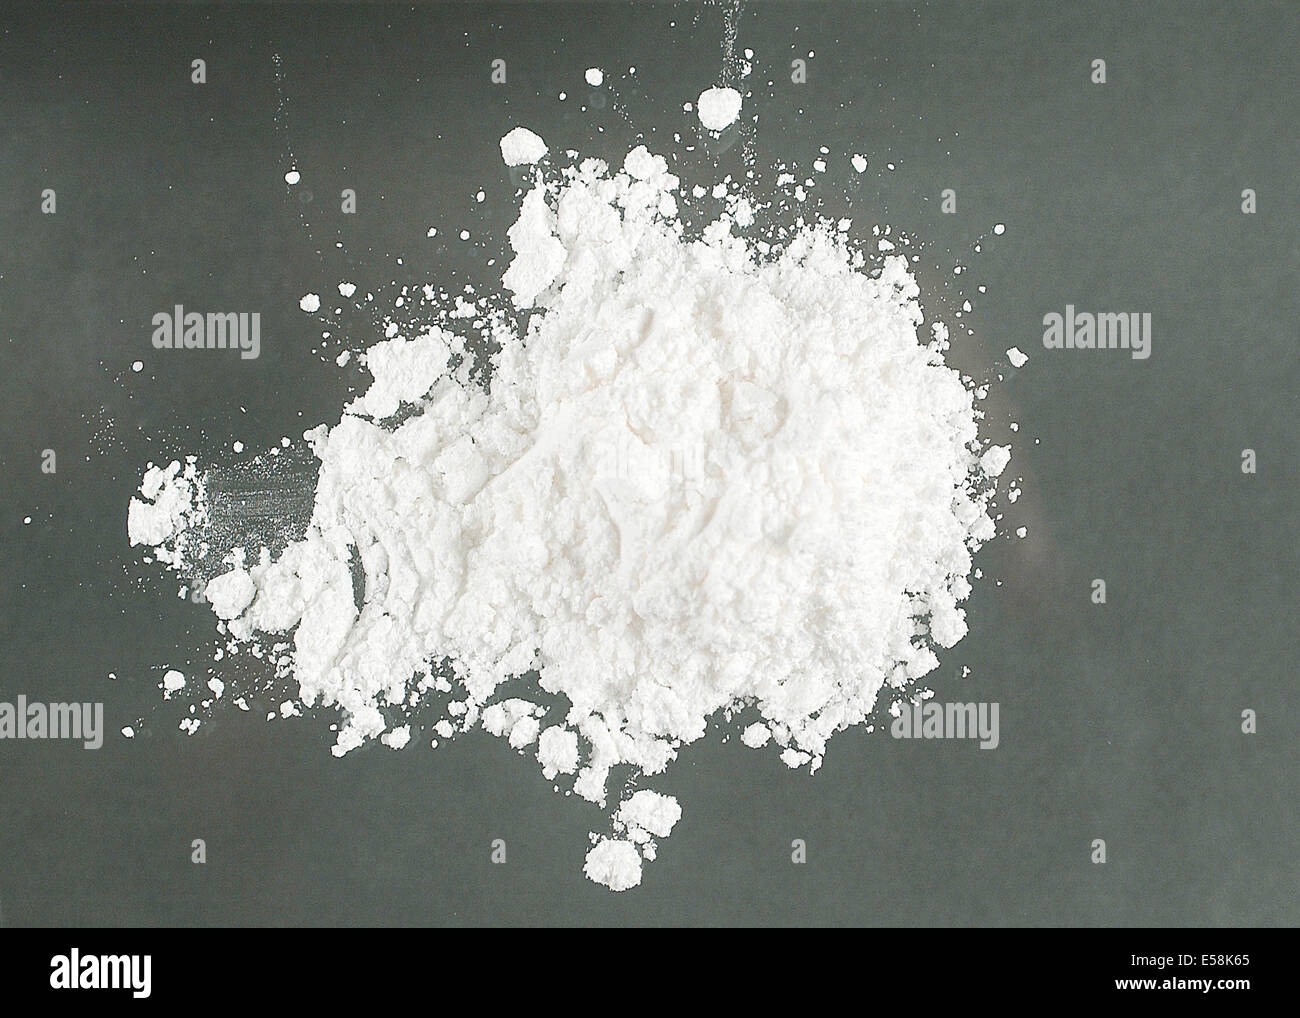 Kokain-Hydrochlorid Pulver durch die United States Drug Enforcement Administration (DEA) beschlagnahmt. Stockfoto